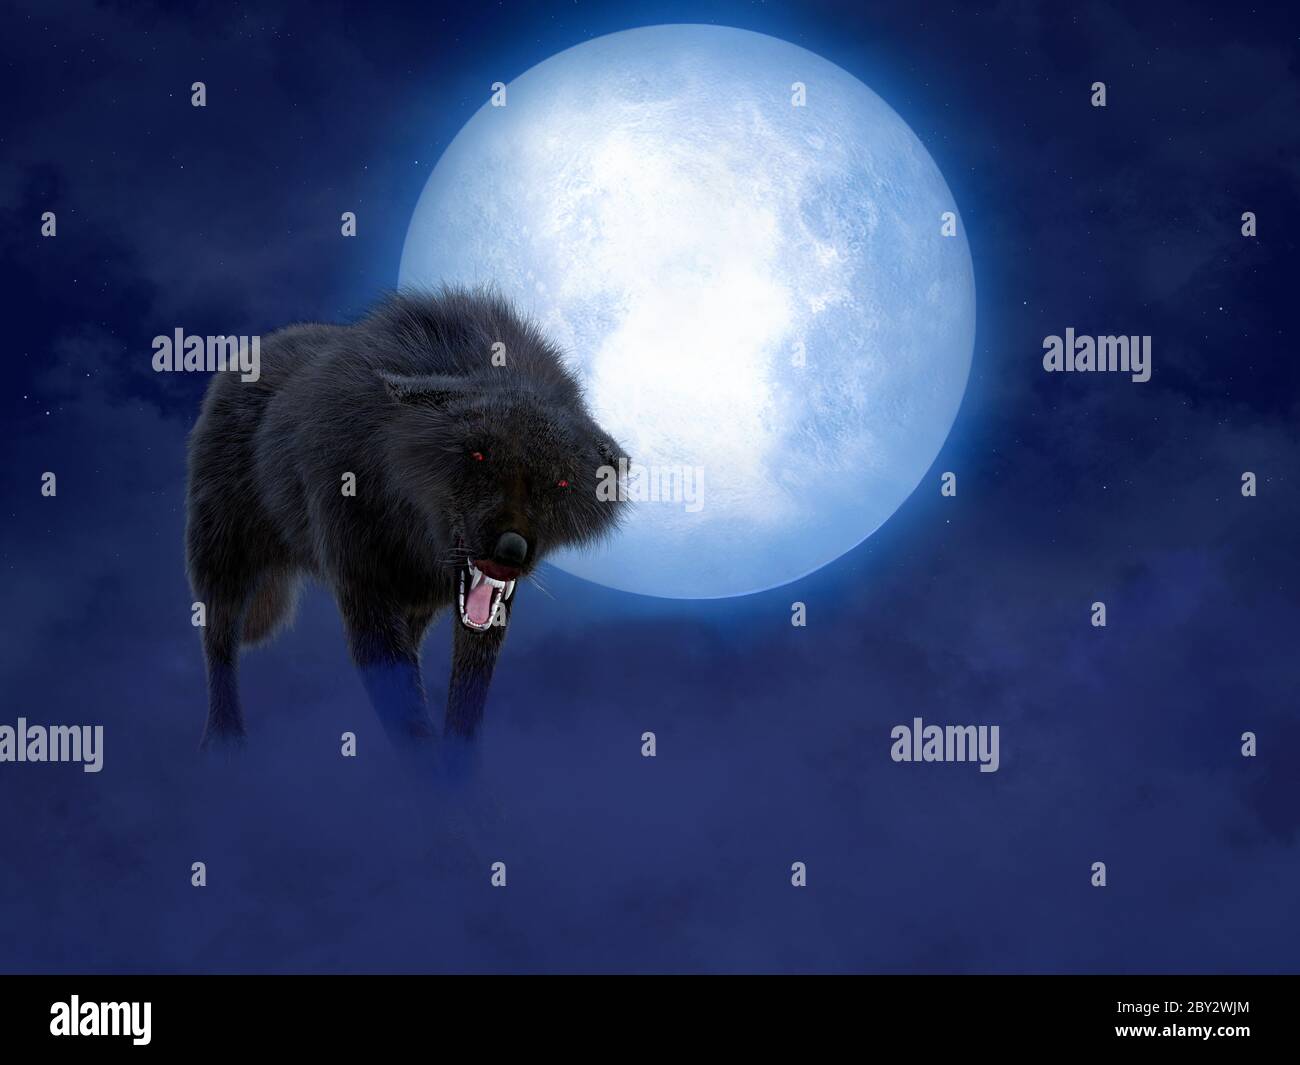 Rendu 3D d'un loup ou d'un loup-garou agressif grognant noir avec des yeux rouges lumineux devant une grande lune. Étoiles dans le ciel nocturne, brouillard sur le sol. Banque D'Images